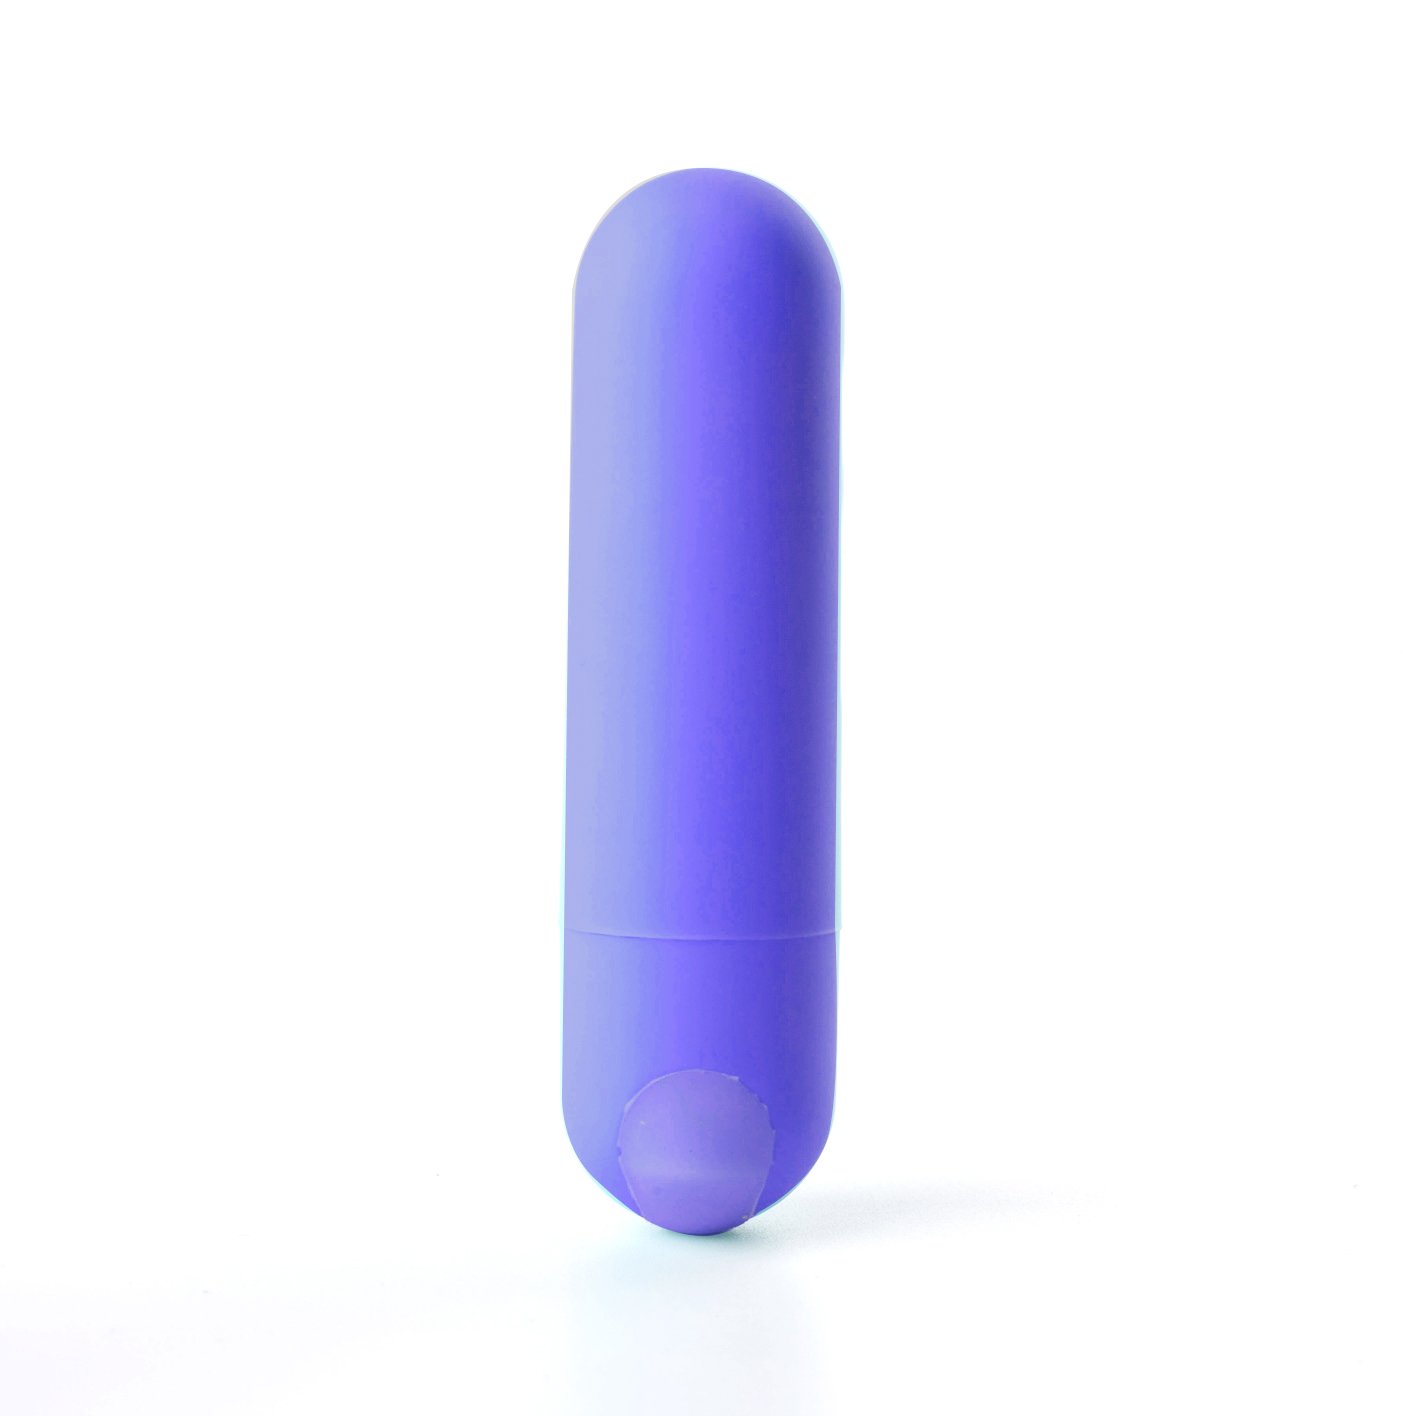 Maia Jessi - Blue 7.6 cm USB Rechargeable Bullet